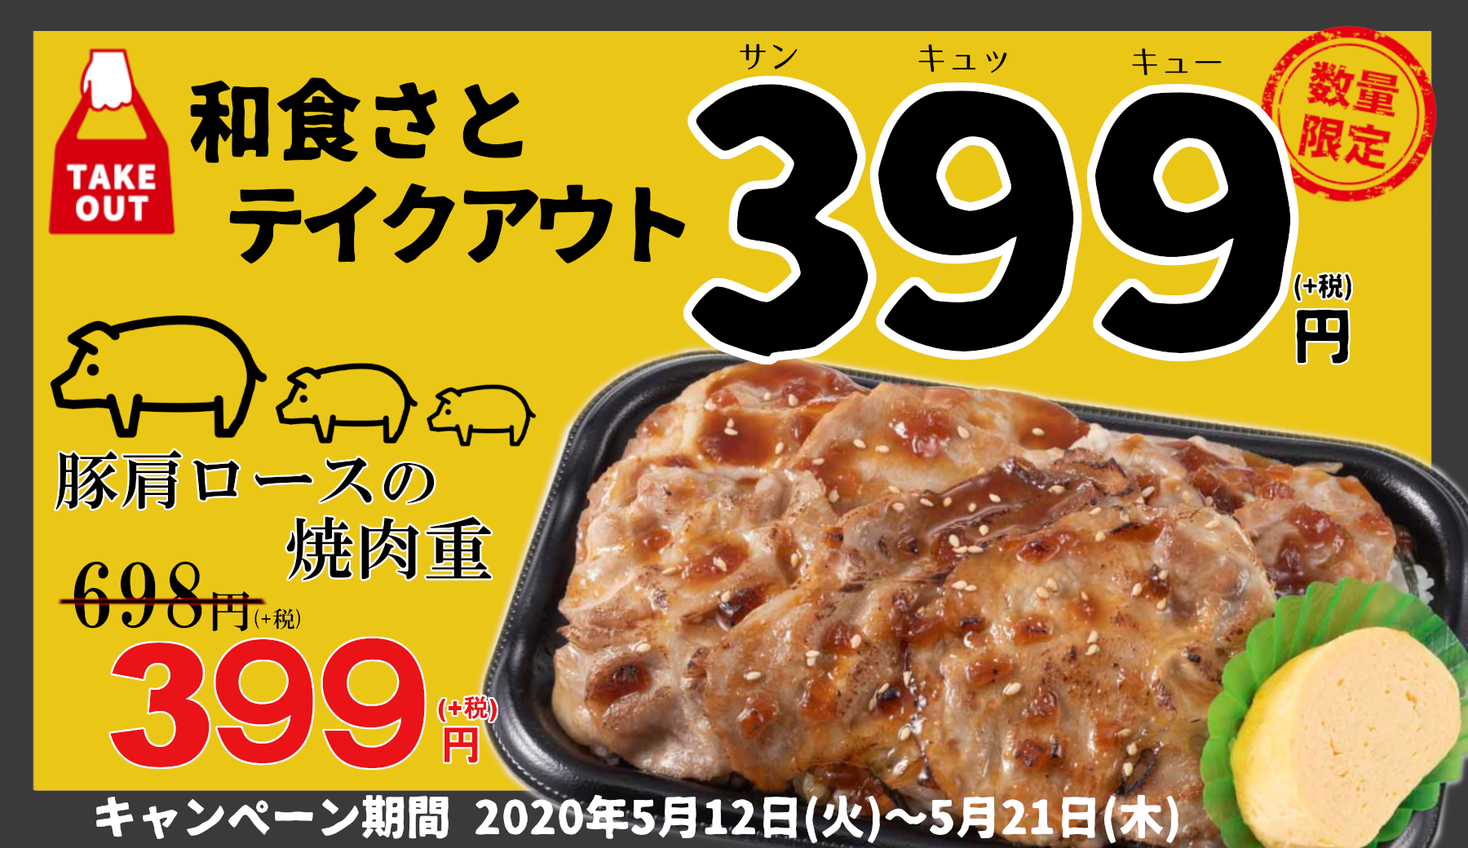 和食さと テイクアウト 豚肉メニュー新登場 ３９９円弁当 サトフードサービス株式会社のプレスリリース